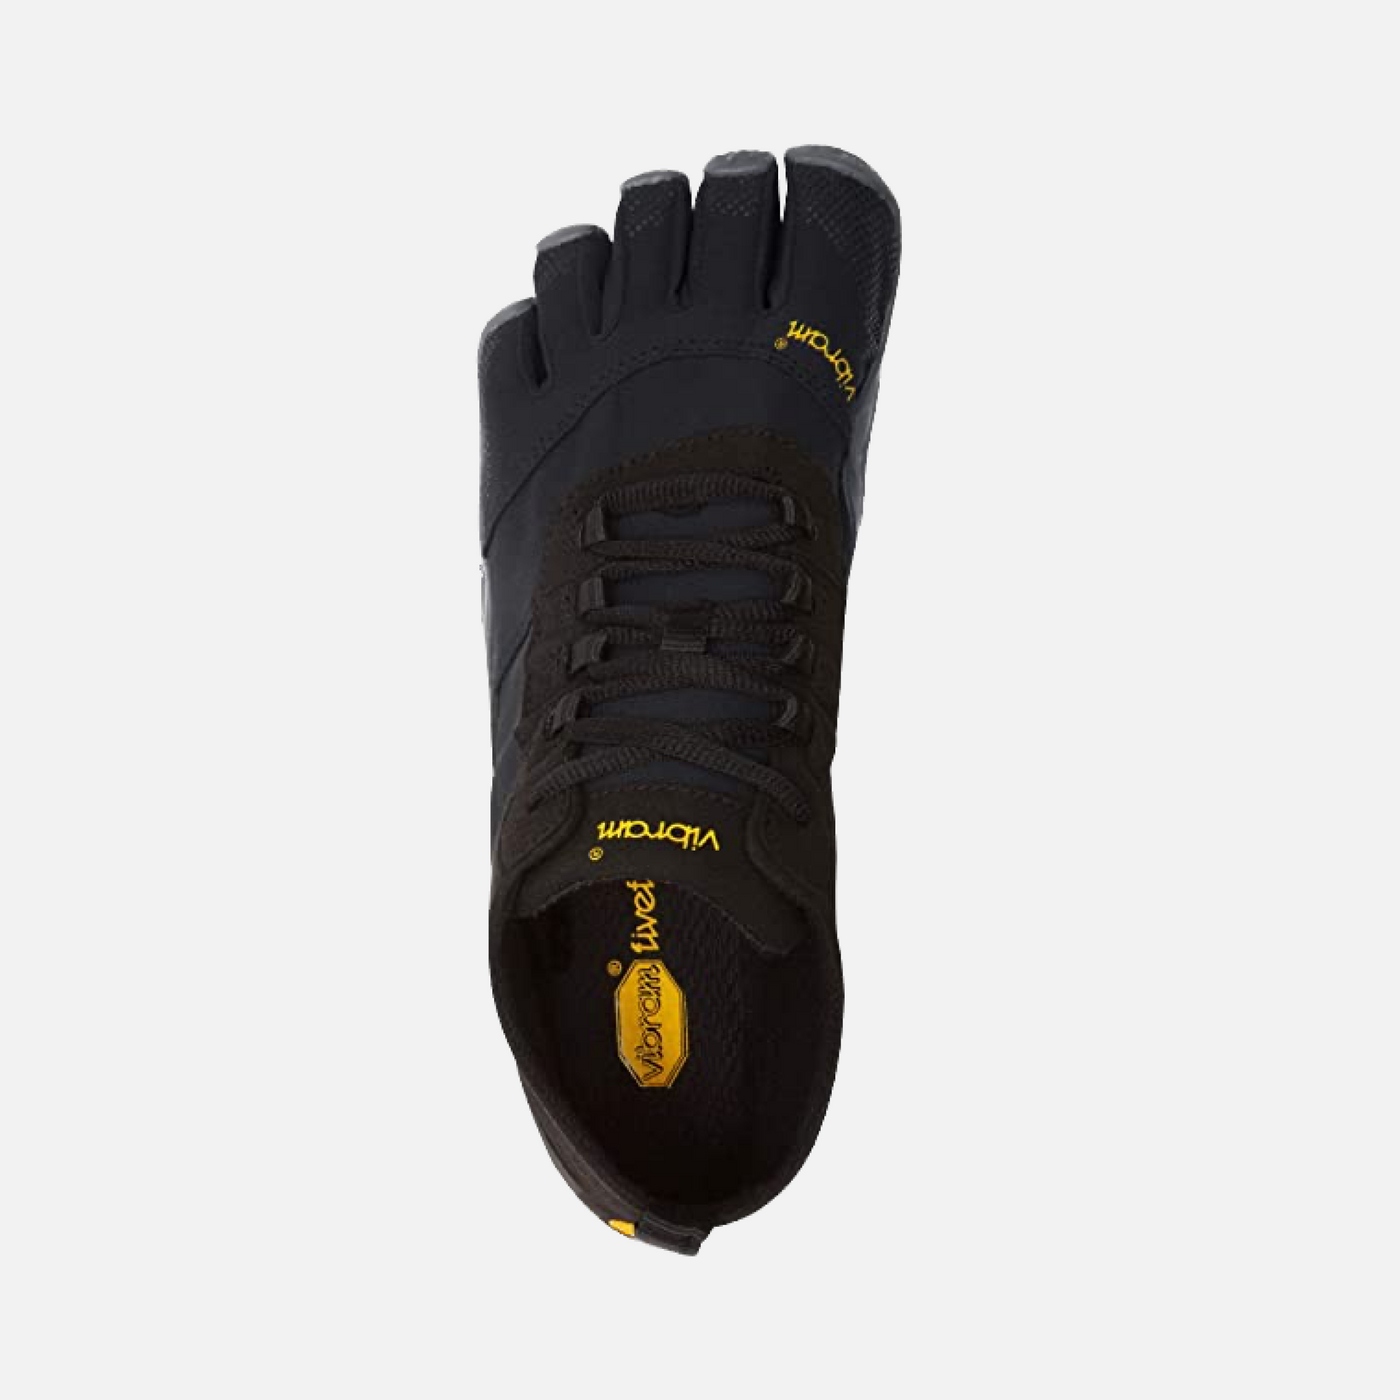 Vibram V-TREK Men's Trekking Shoes